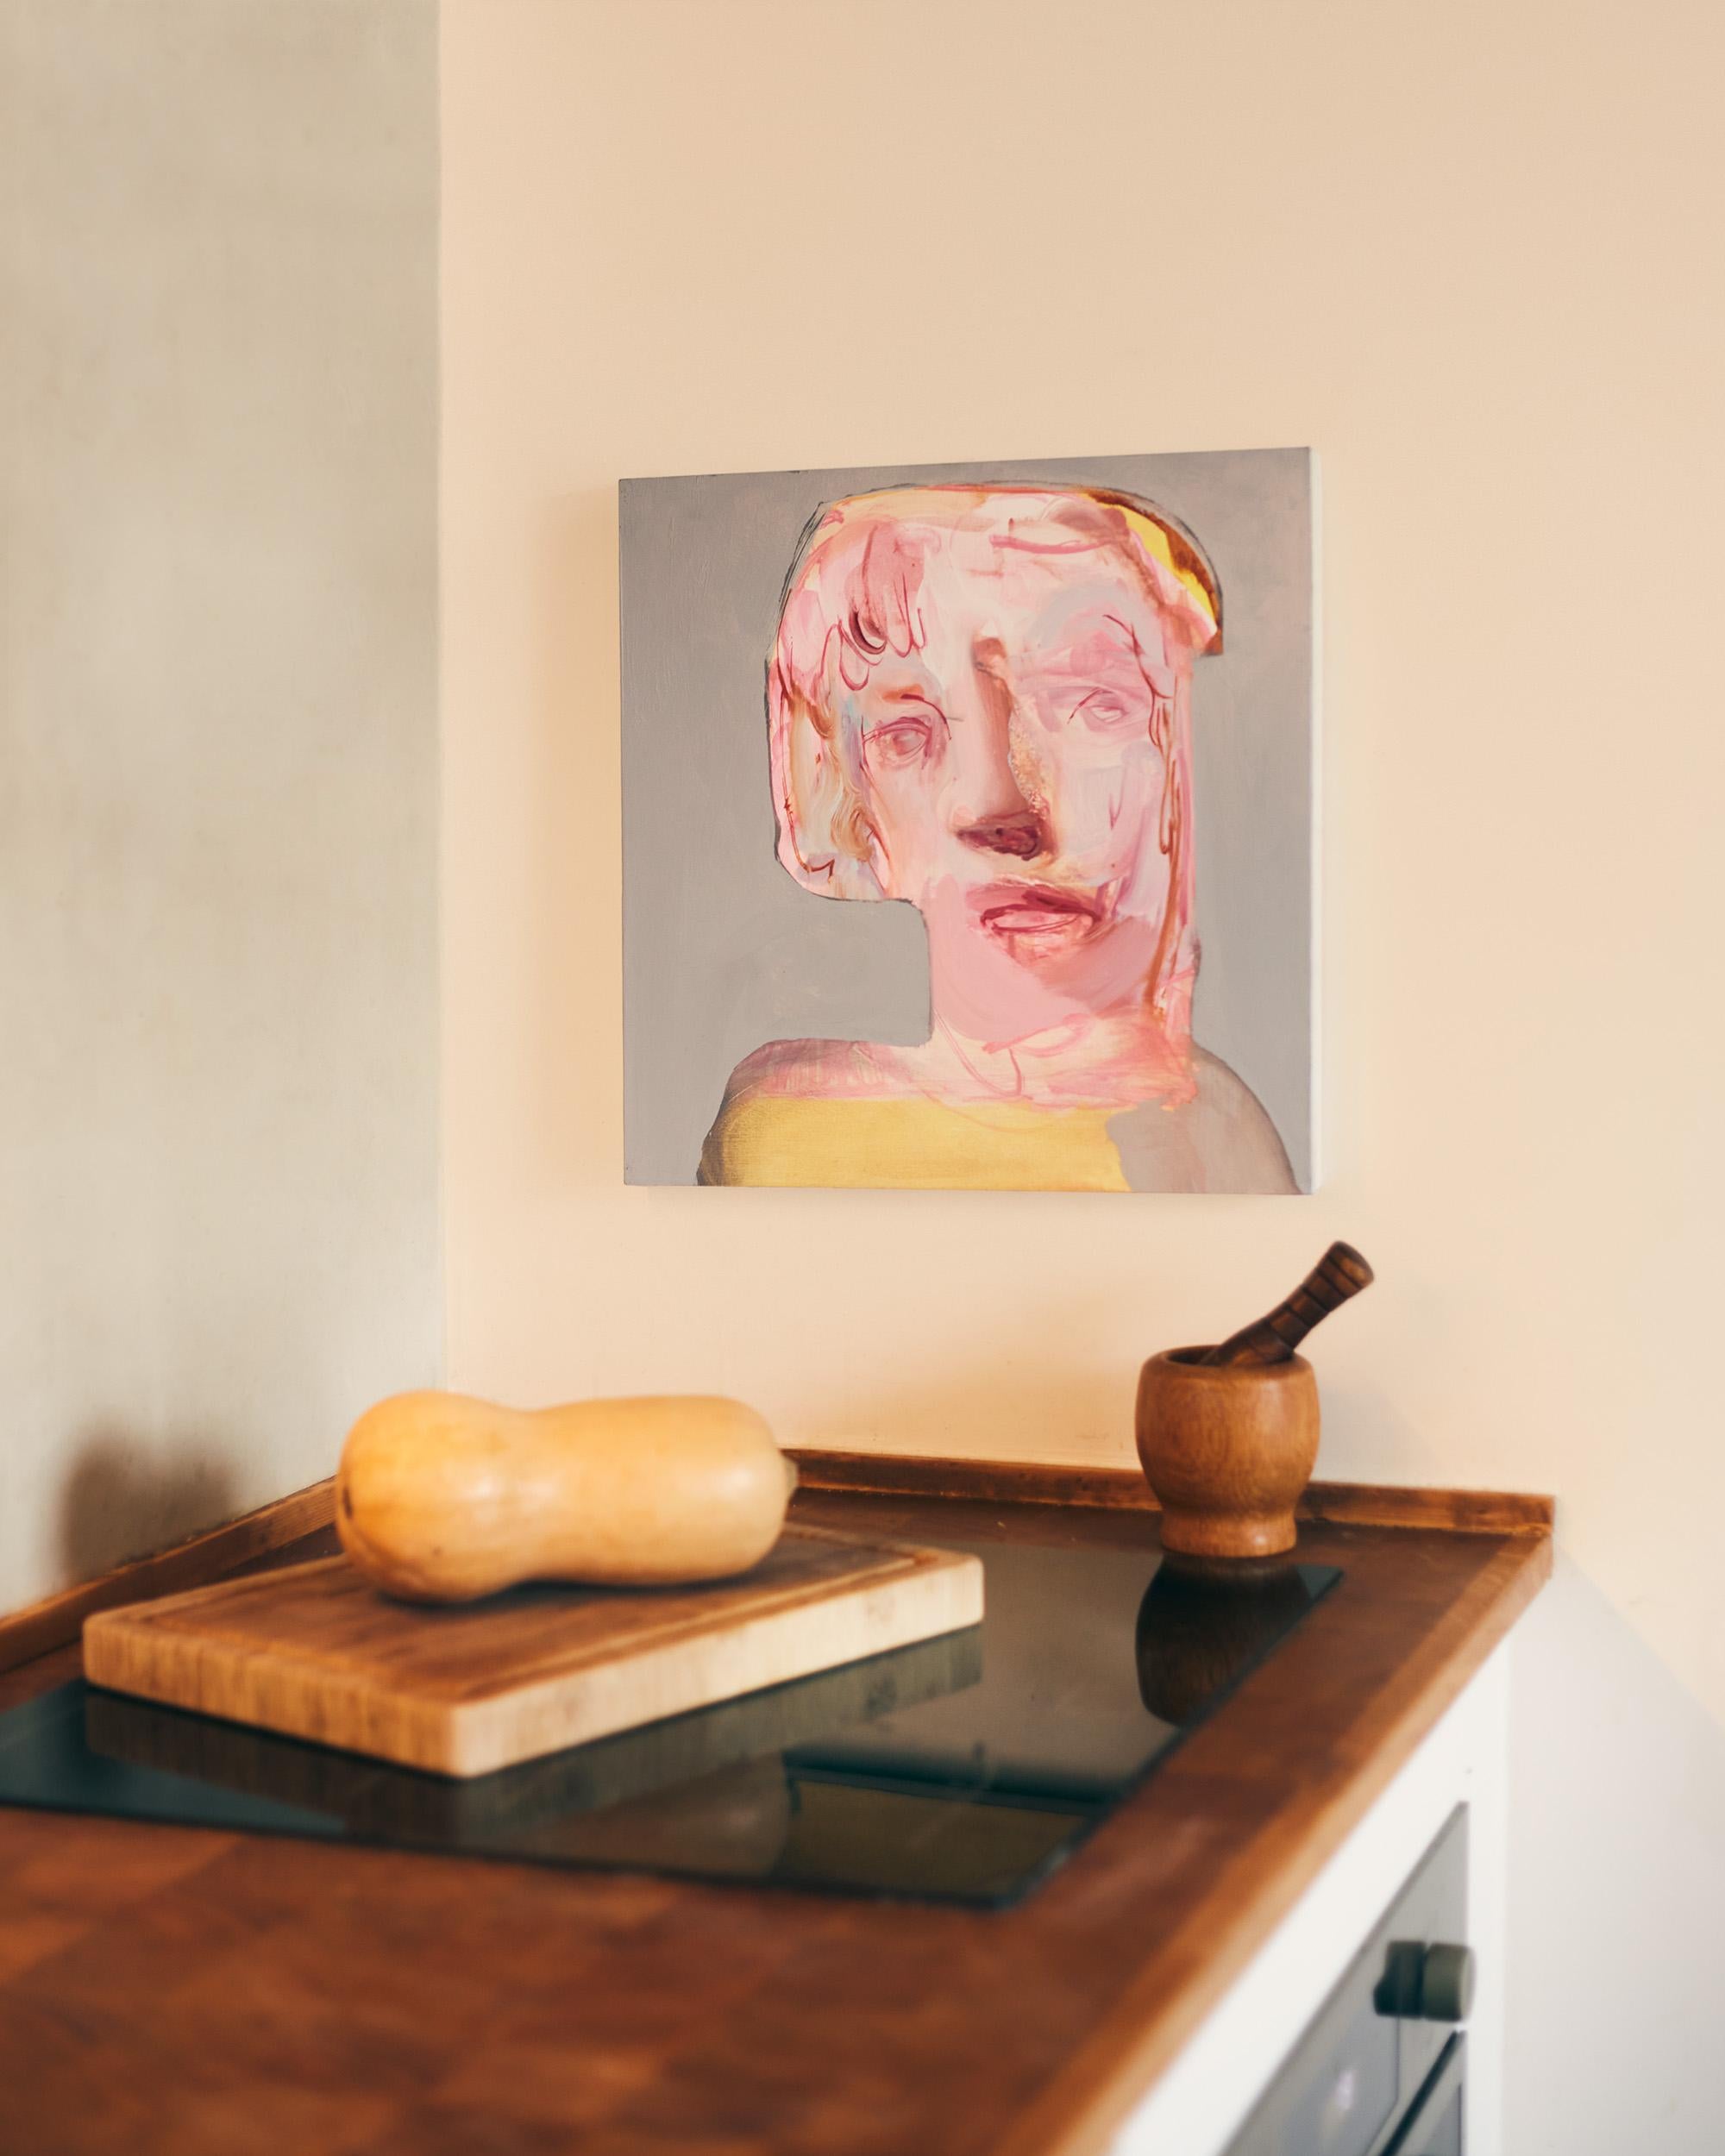 Jeune Frau blonde – zeitgenössisches Porträtgemälde in Öl auf Leinwand, 2020 – Painting von Etienne François